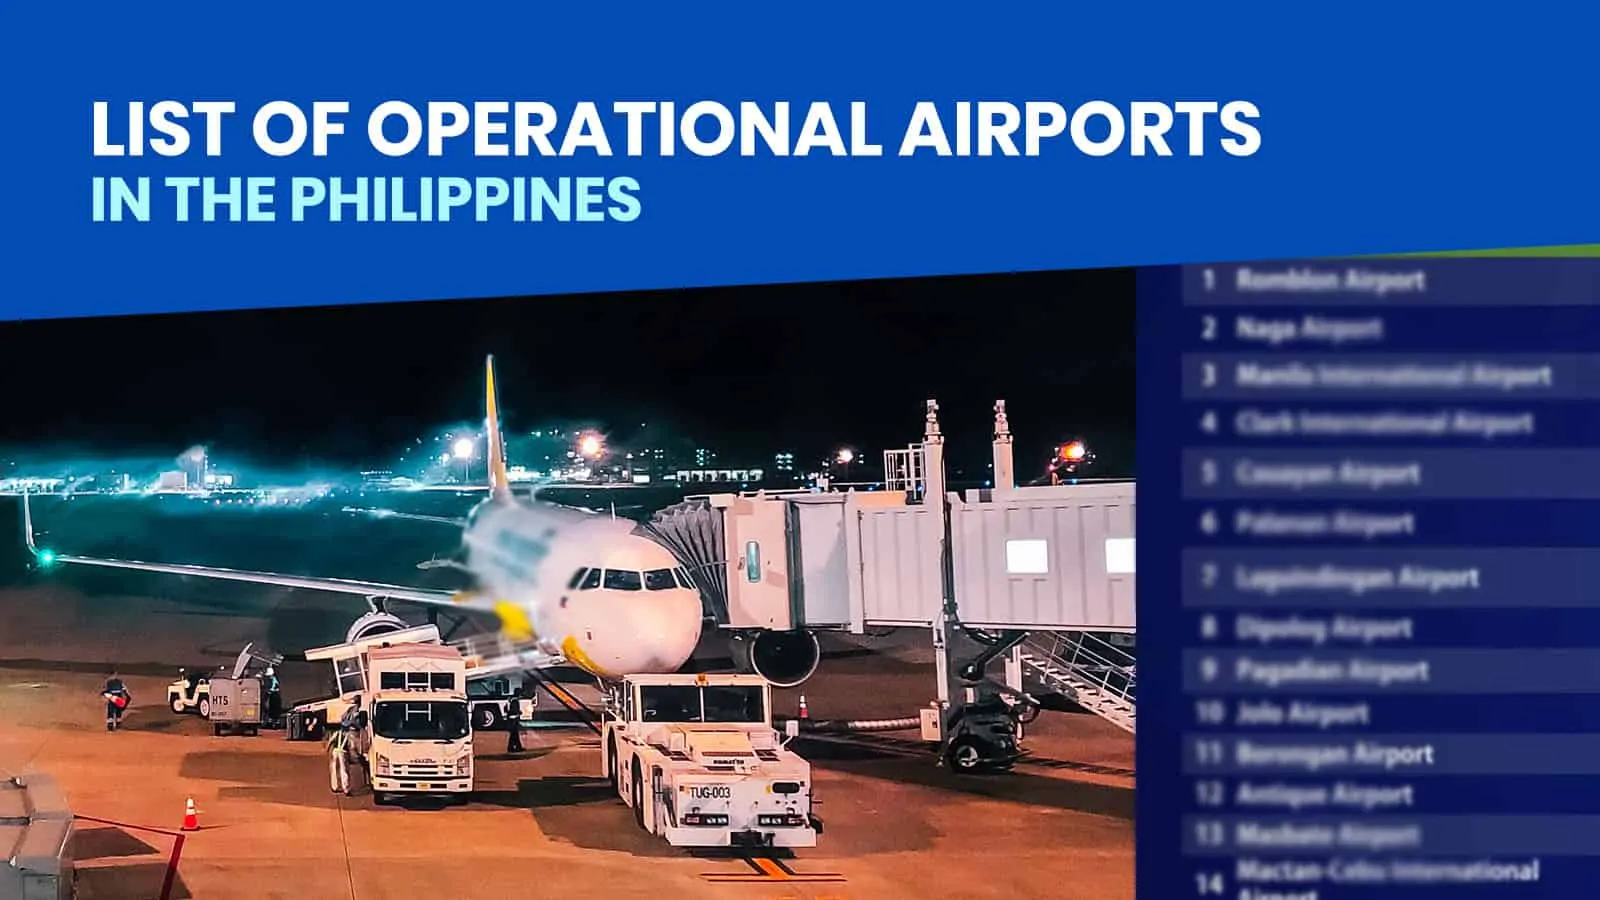 菲律宾的运营机场清单：截至2020年7月17日